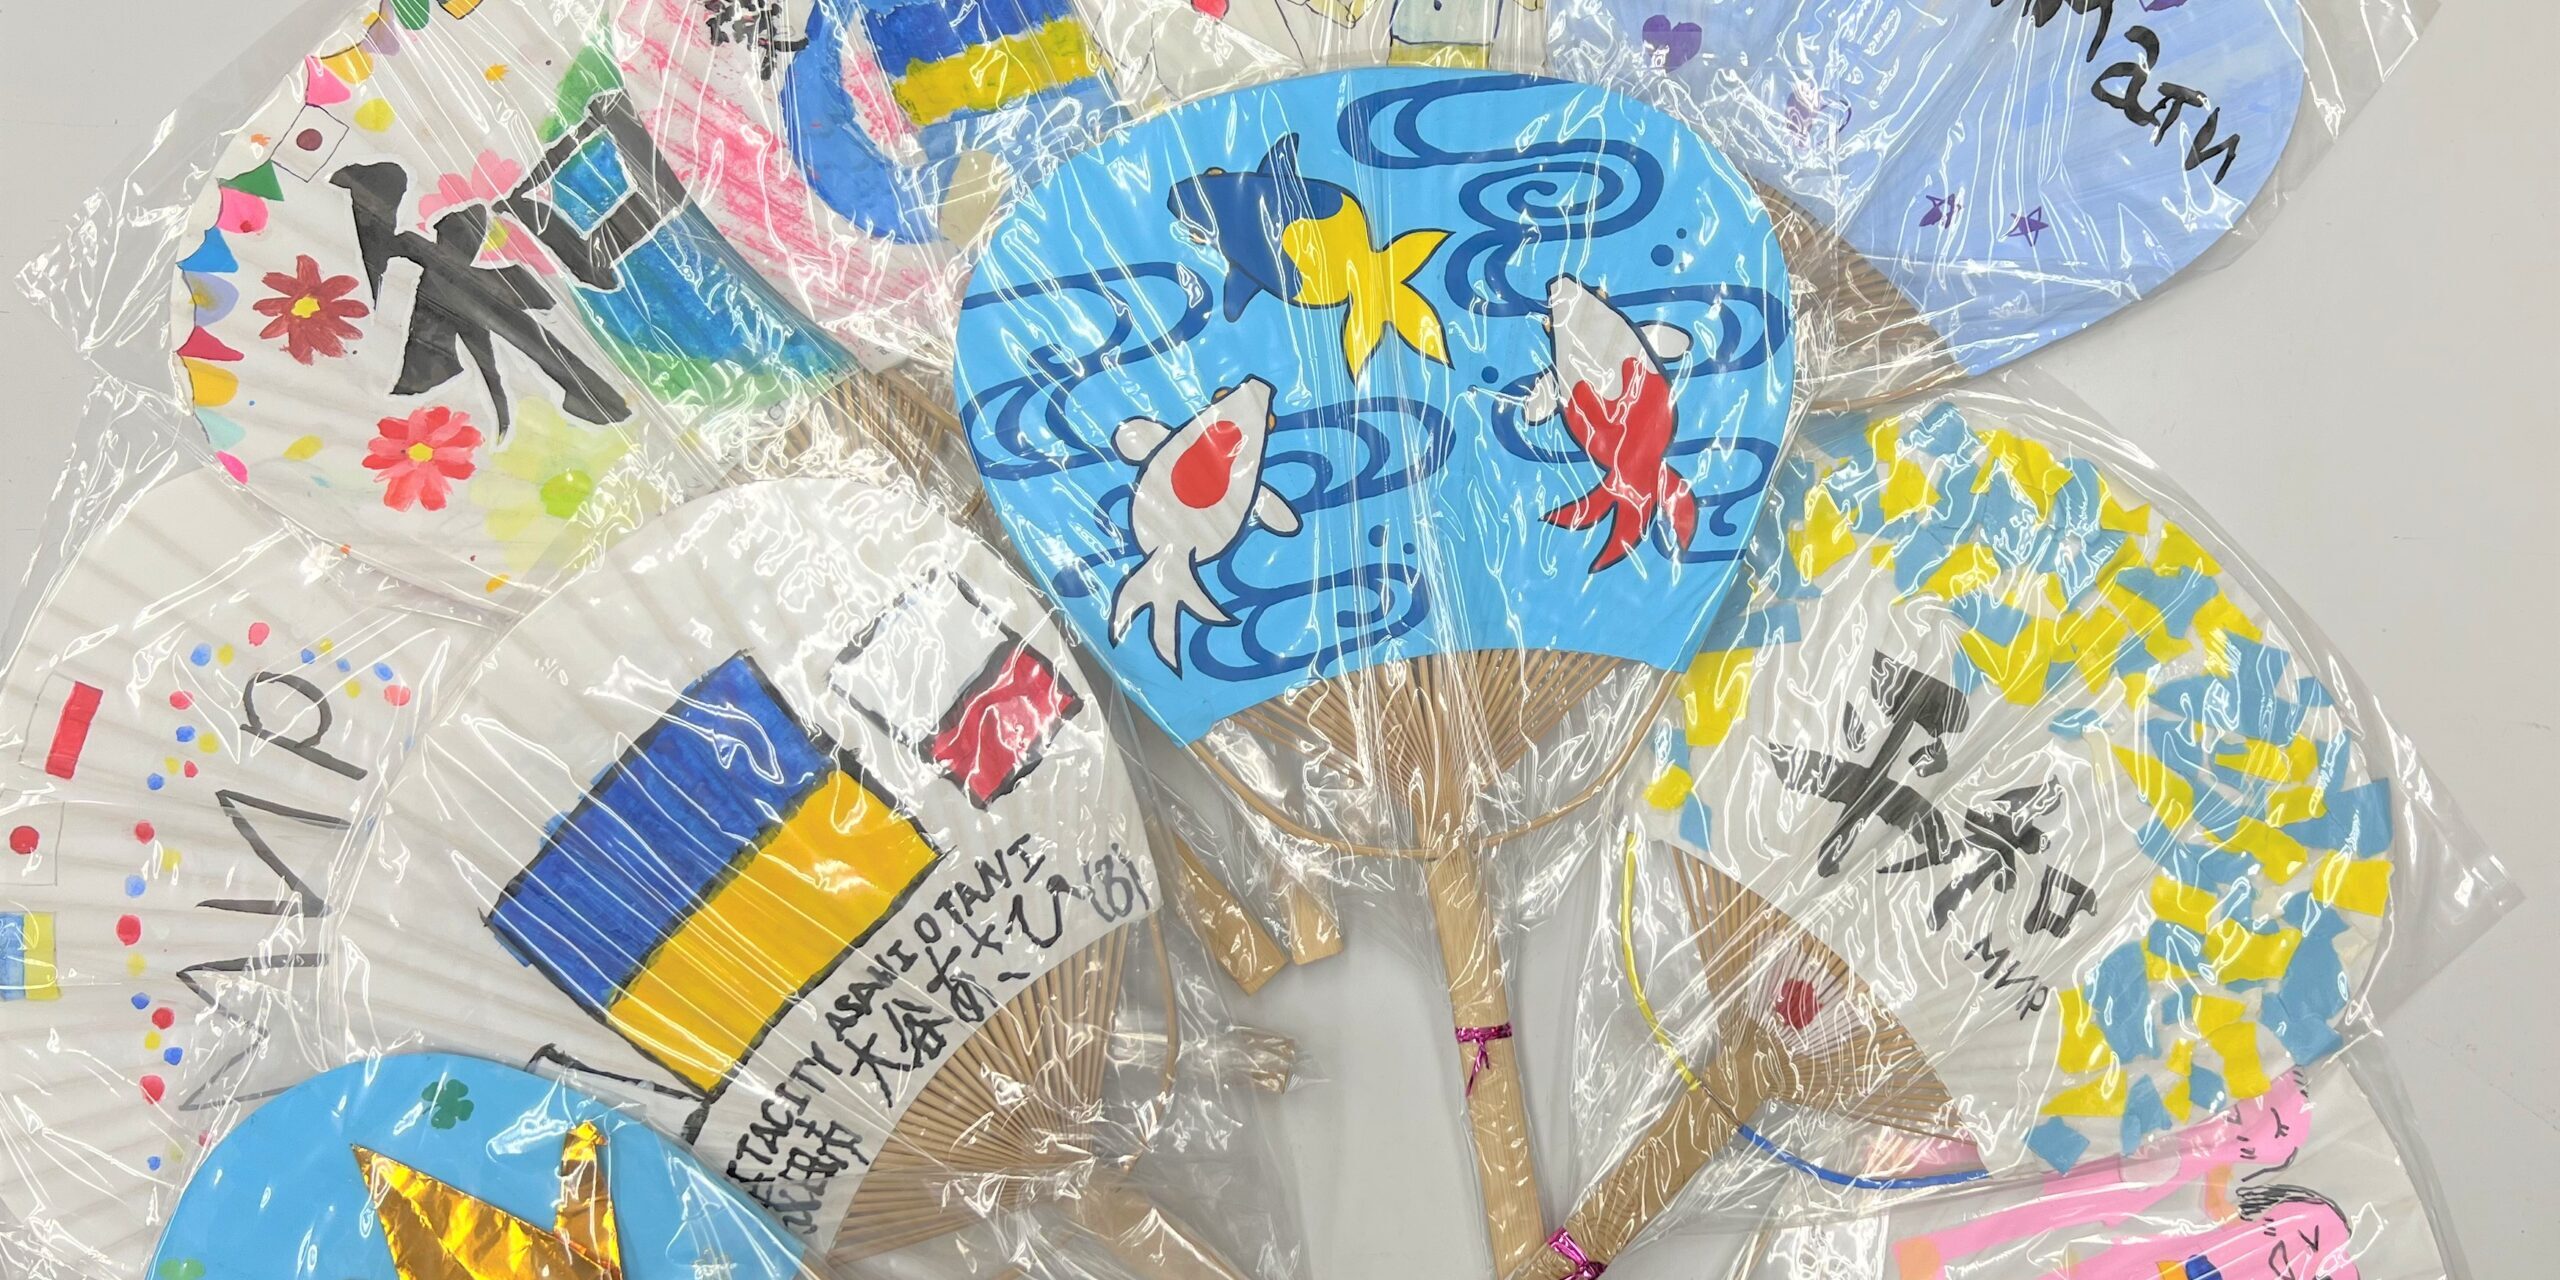 Obrazek przedstawia kilka ułożonych obok siebie wachlarzy "uchiwa". Wachlarze są bardzo kolorowe, namalowane są na nich symbole barw narodowych Japonii i Polski (biało czerwone) oraz Ukrainy (niebiesko-żółte).